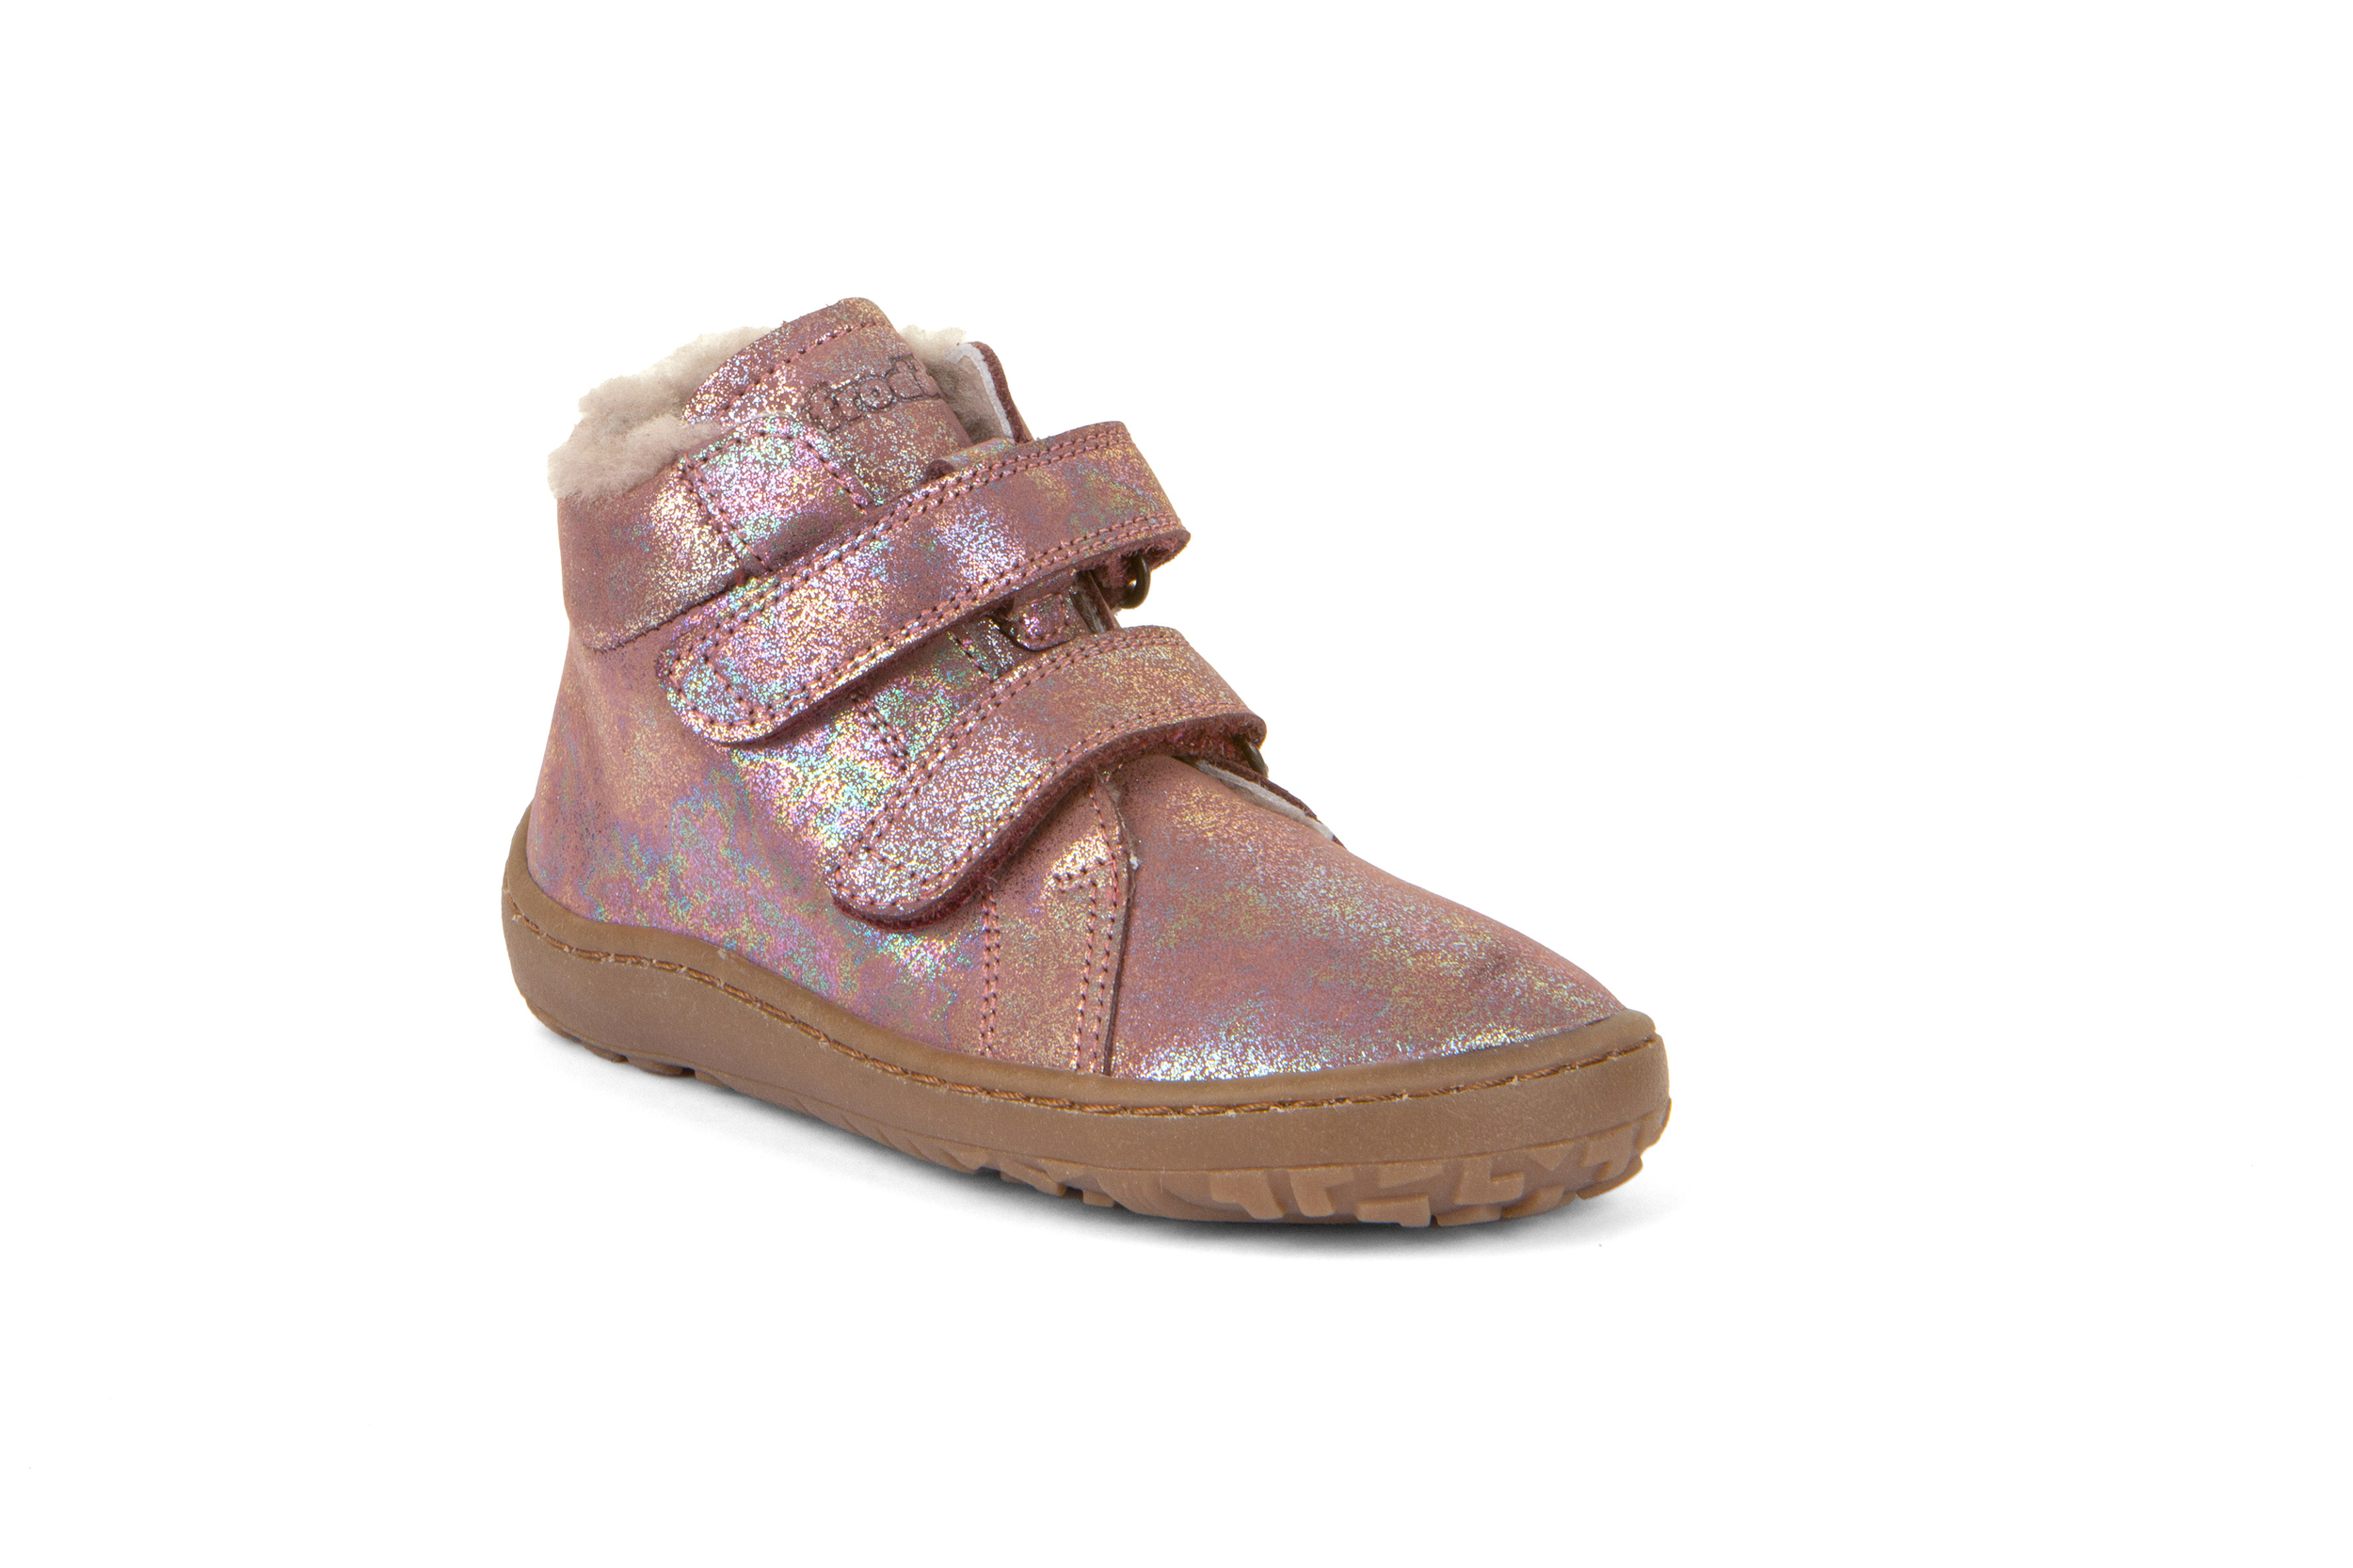 Bottines WINTER FURRY Froddo barefoot - pink shine - G3110227-12K